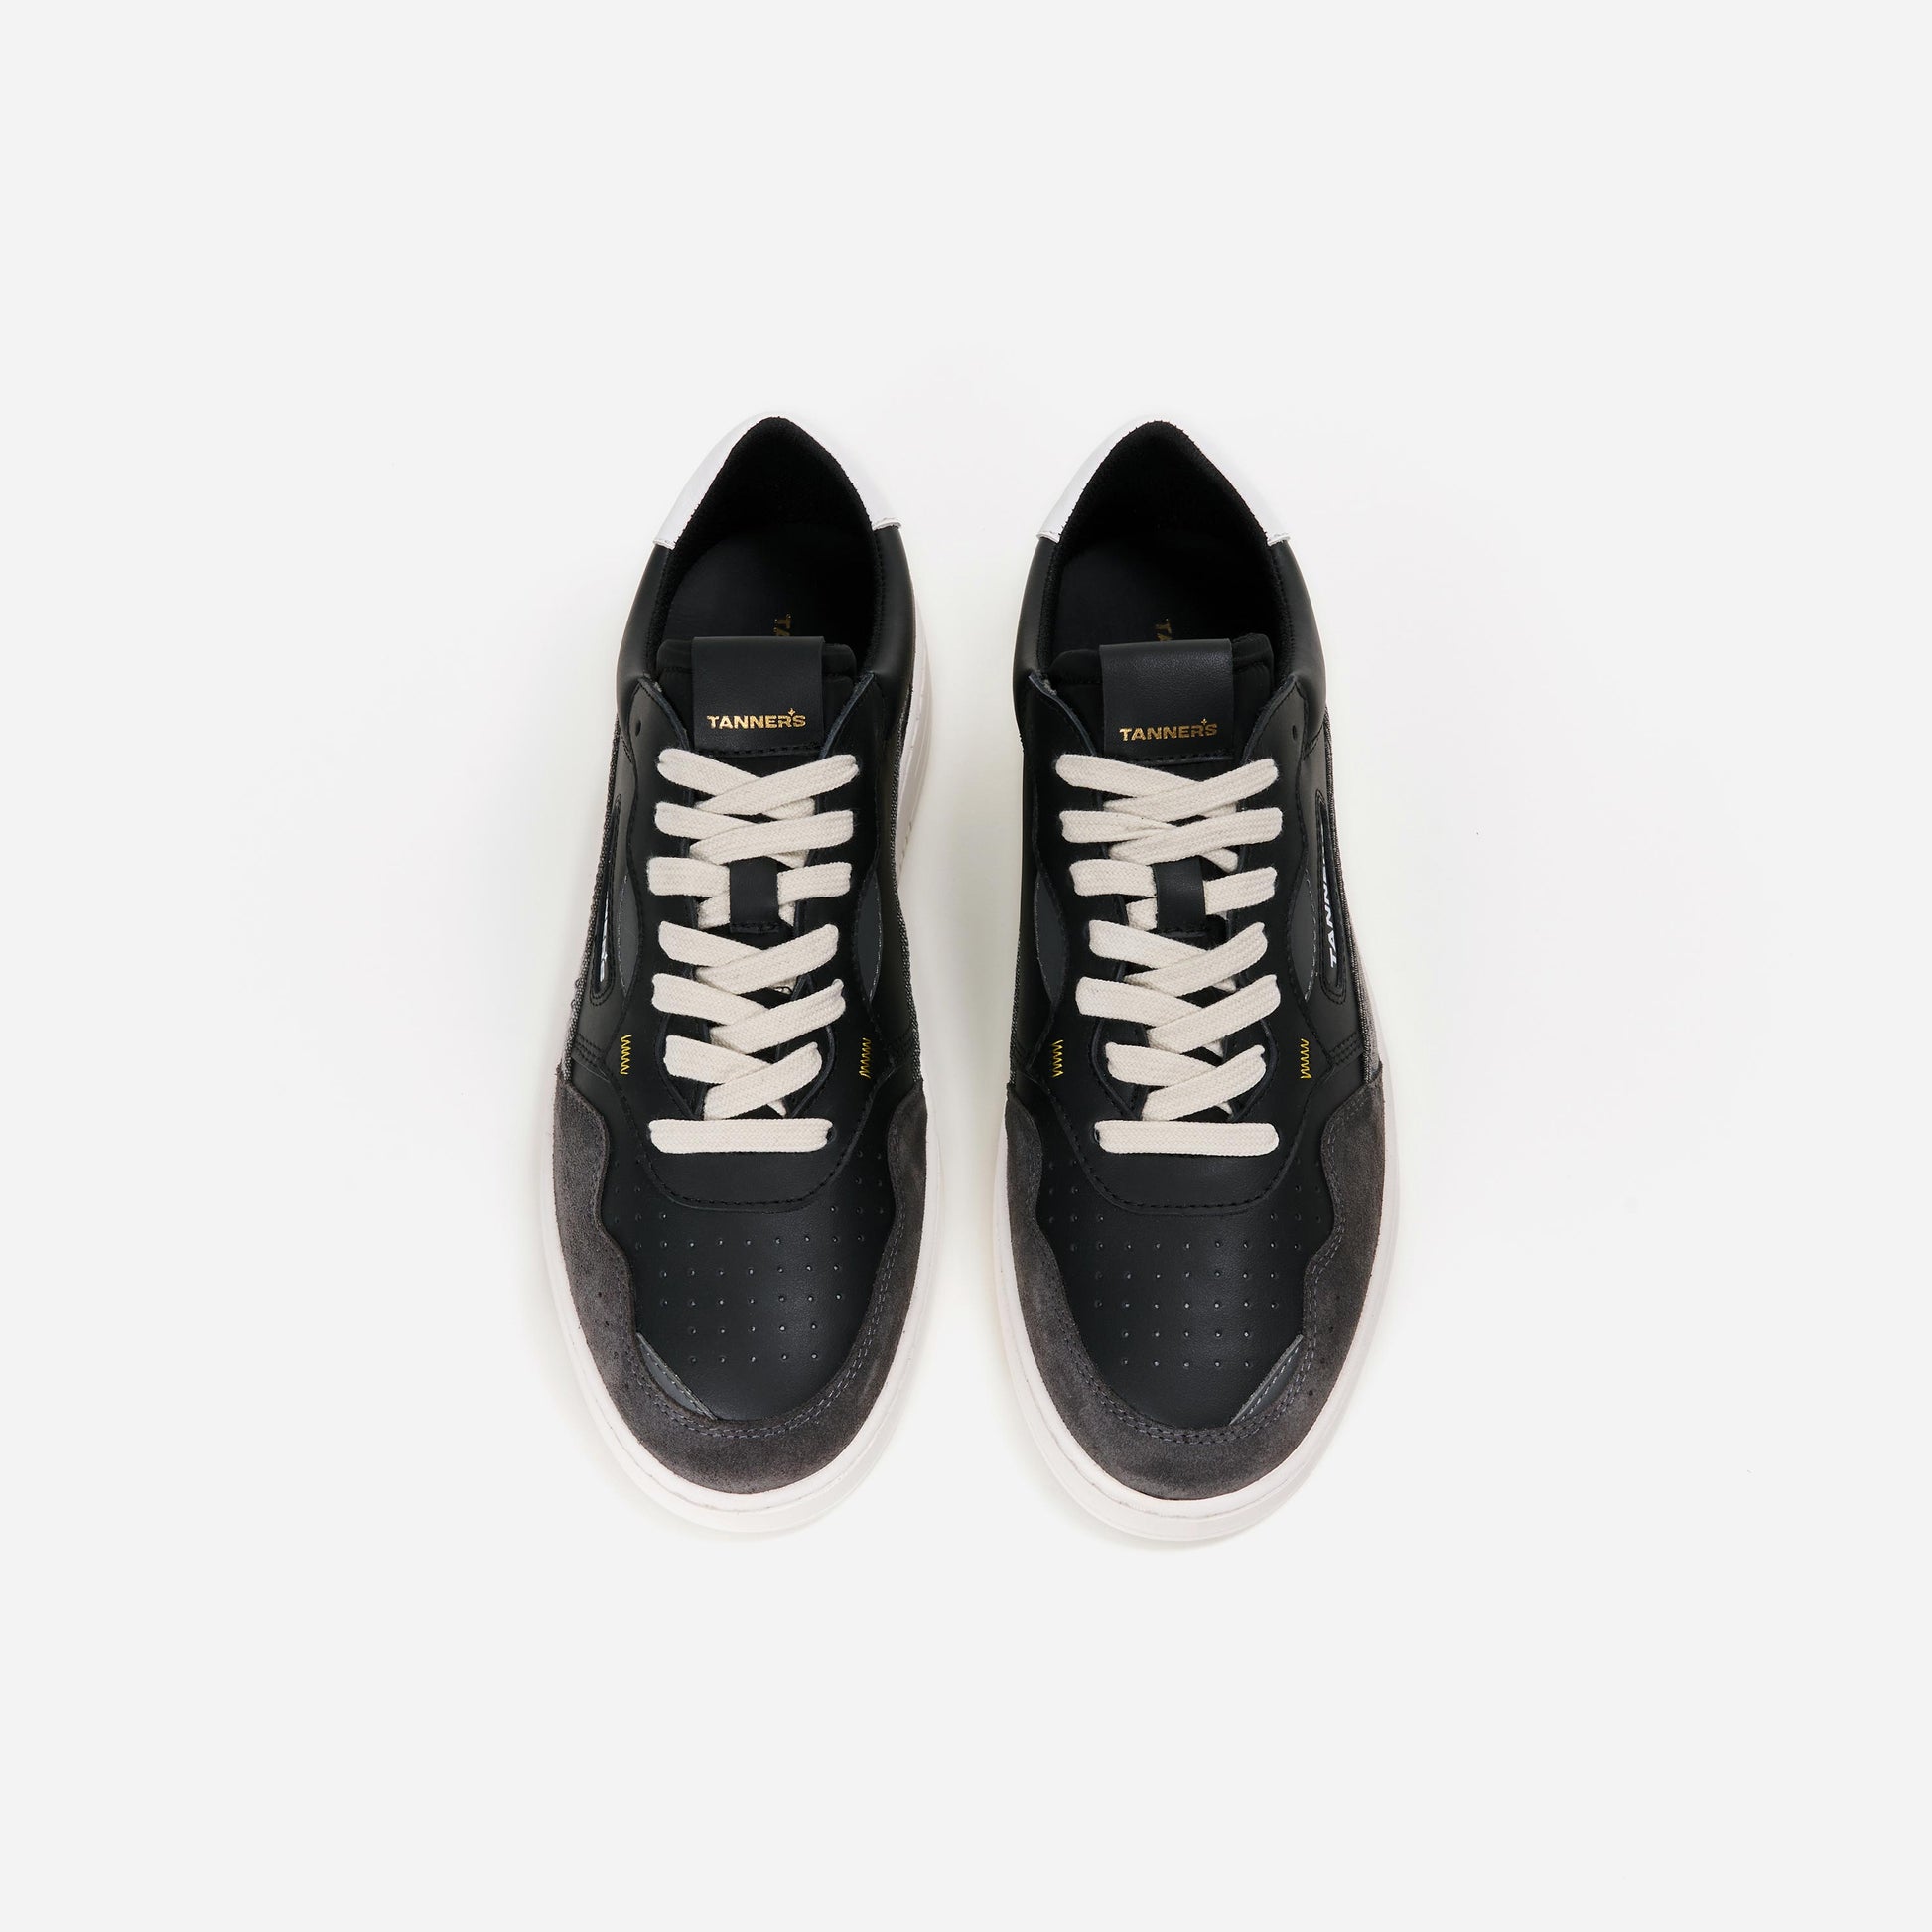 Ein schwarzer Tanners Sneaker, von oben betrachtet. Das Obermaterial ist aus Leder und weist eine glatte Textur auf. Die Schuhsohle hat eine markante Profilstruktur und ist weiß abgesetzt